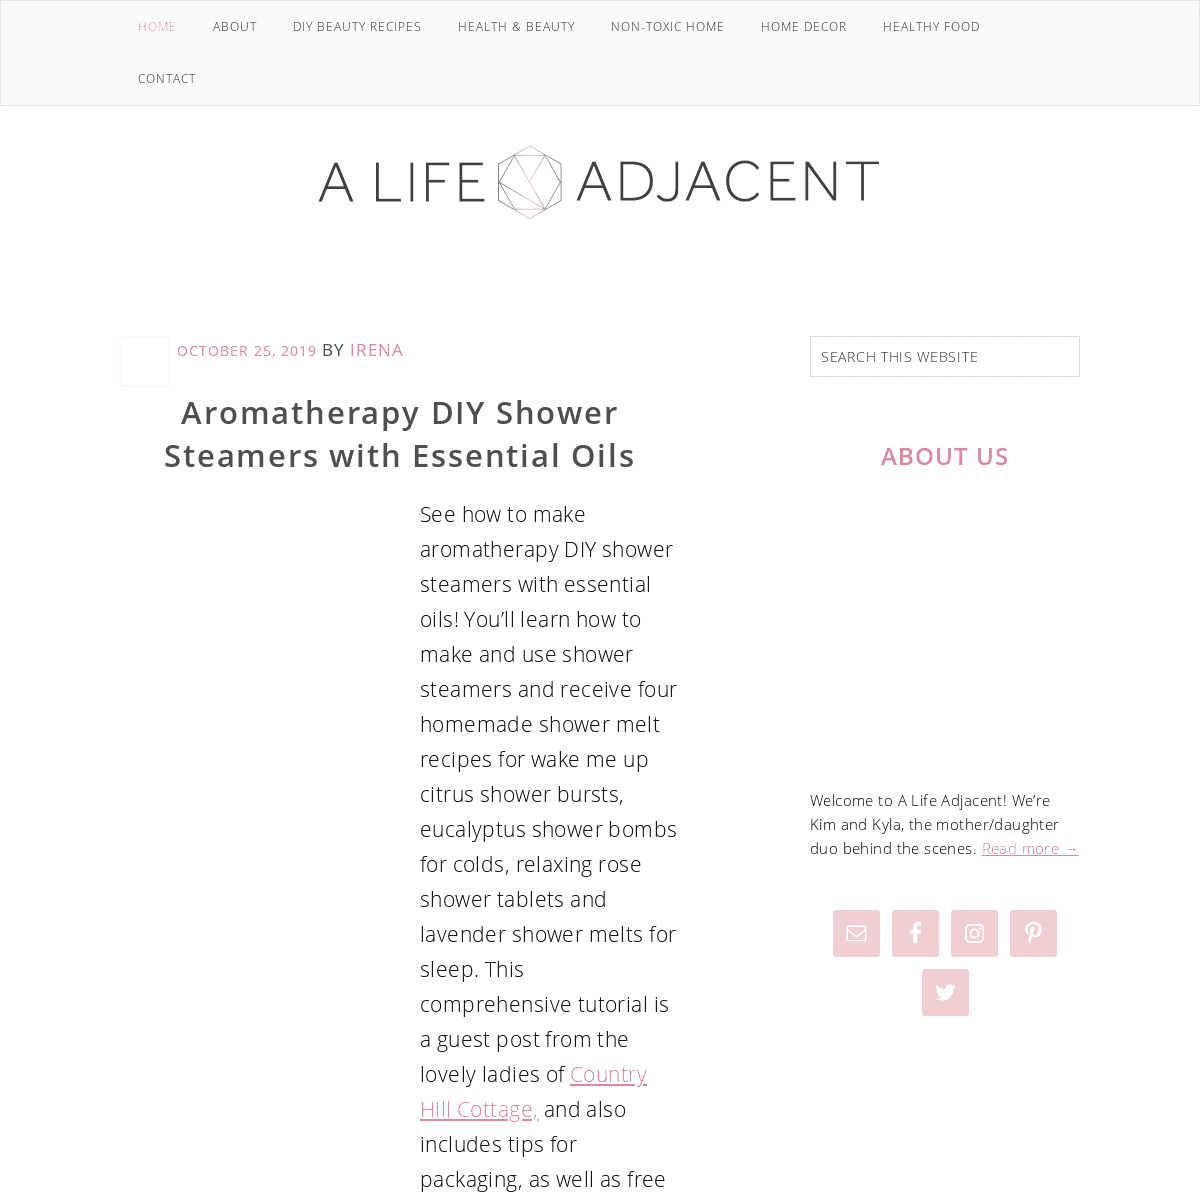 A complete backup of alifeadjacent.com